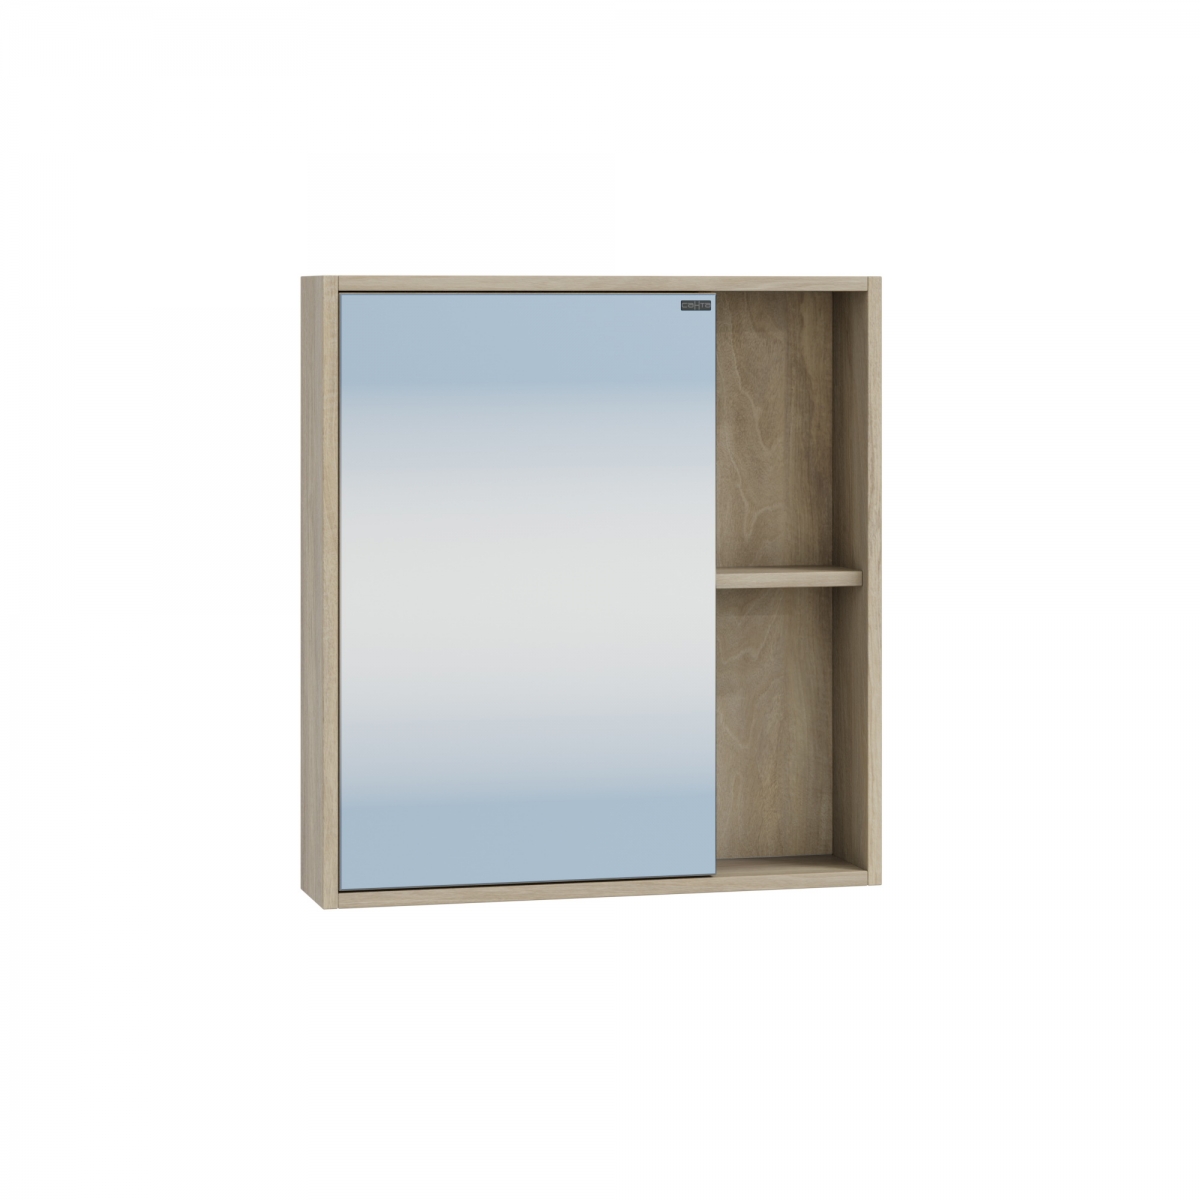 Зеркальный шкаф СанТа Прима 60 см 700344 подвесной, дуб светлый зеркальный шкаф sintesi